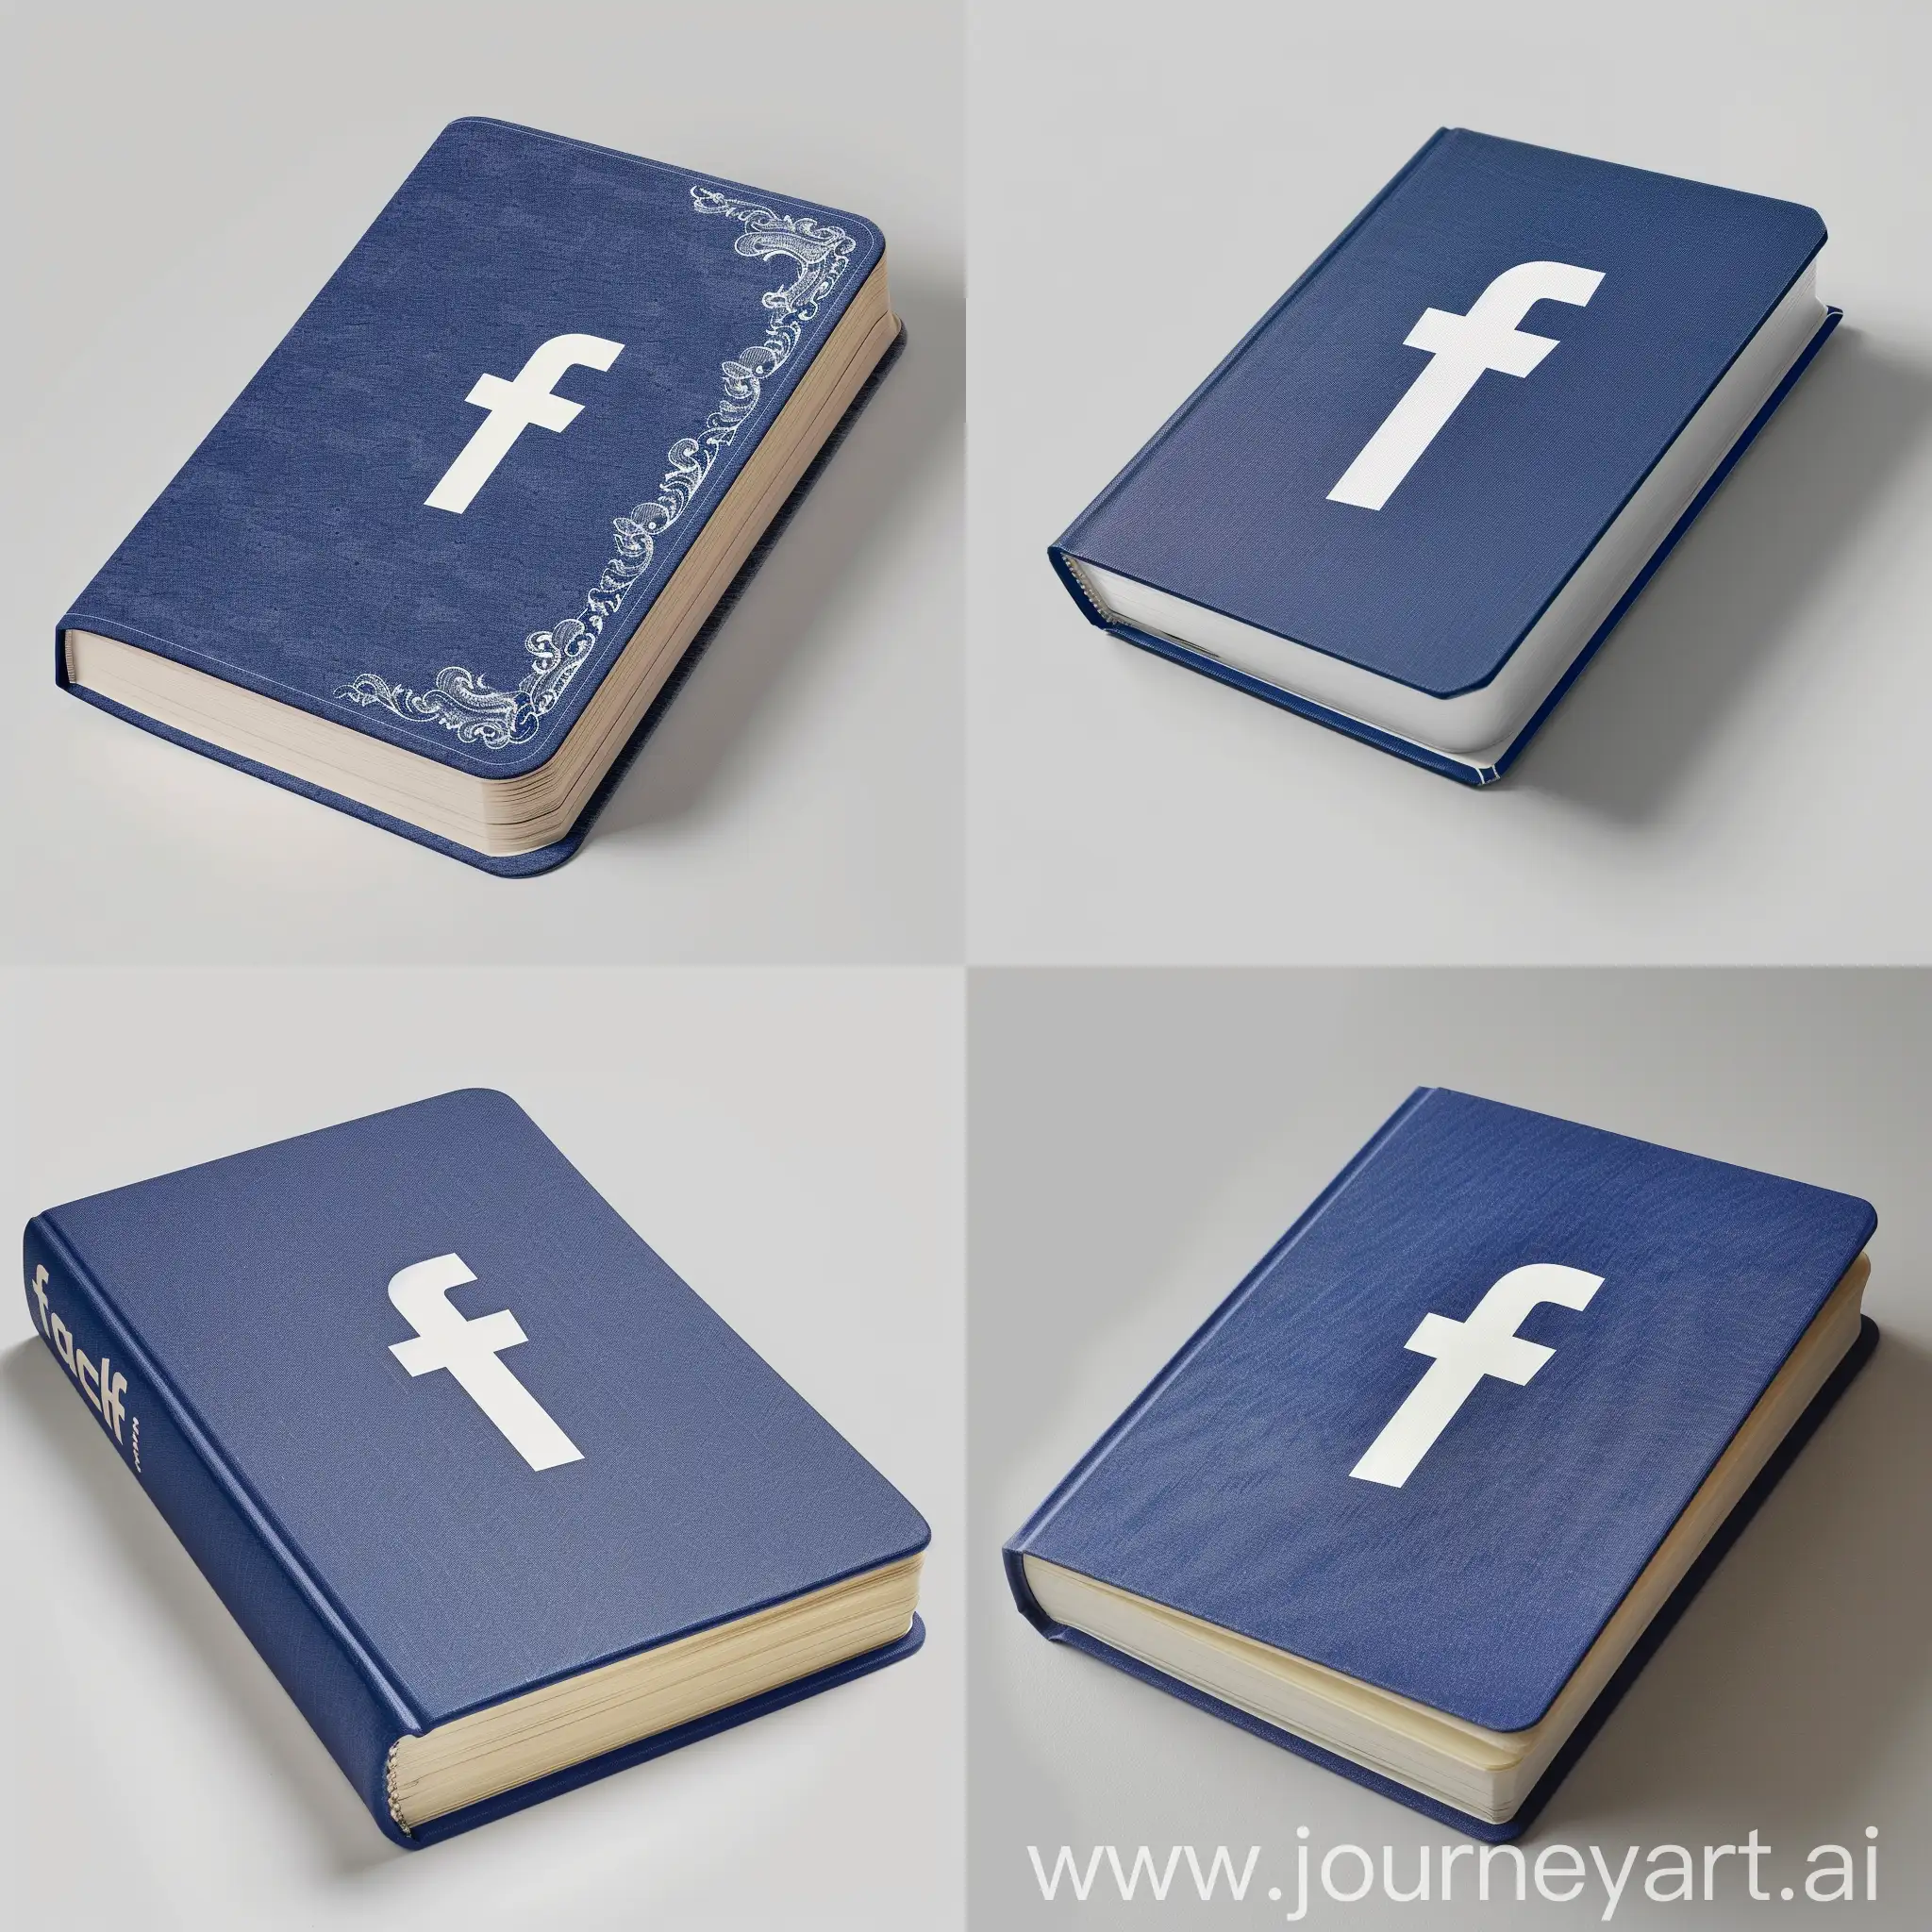 Minimalistic-Facebook-Book-Cover-Design